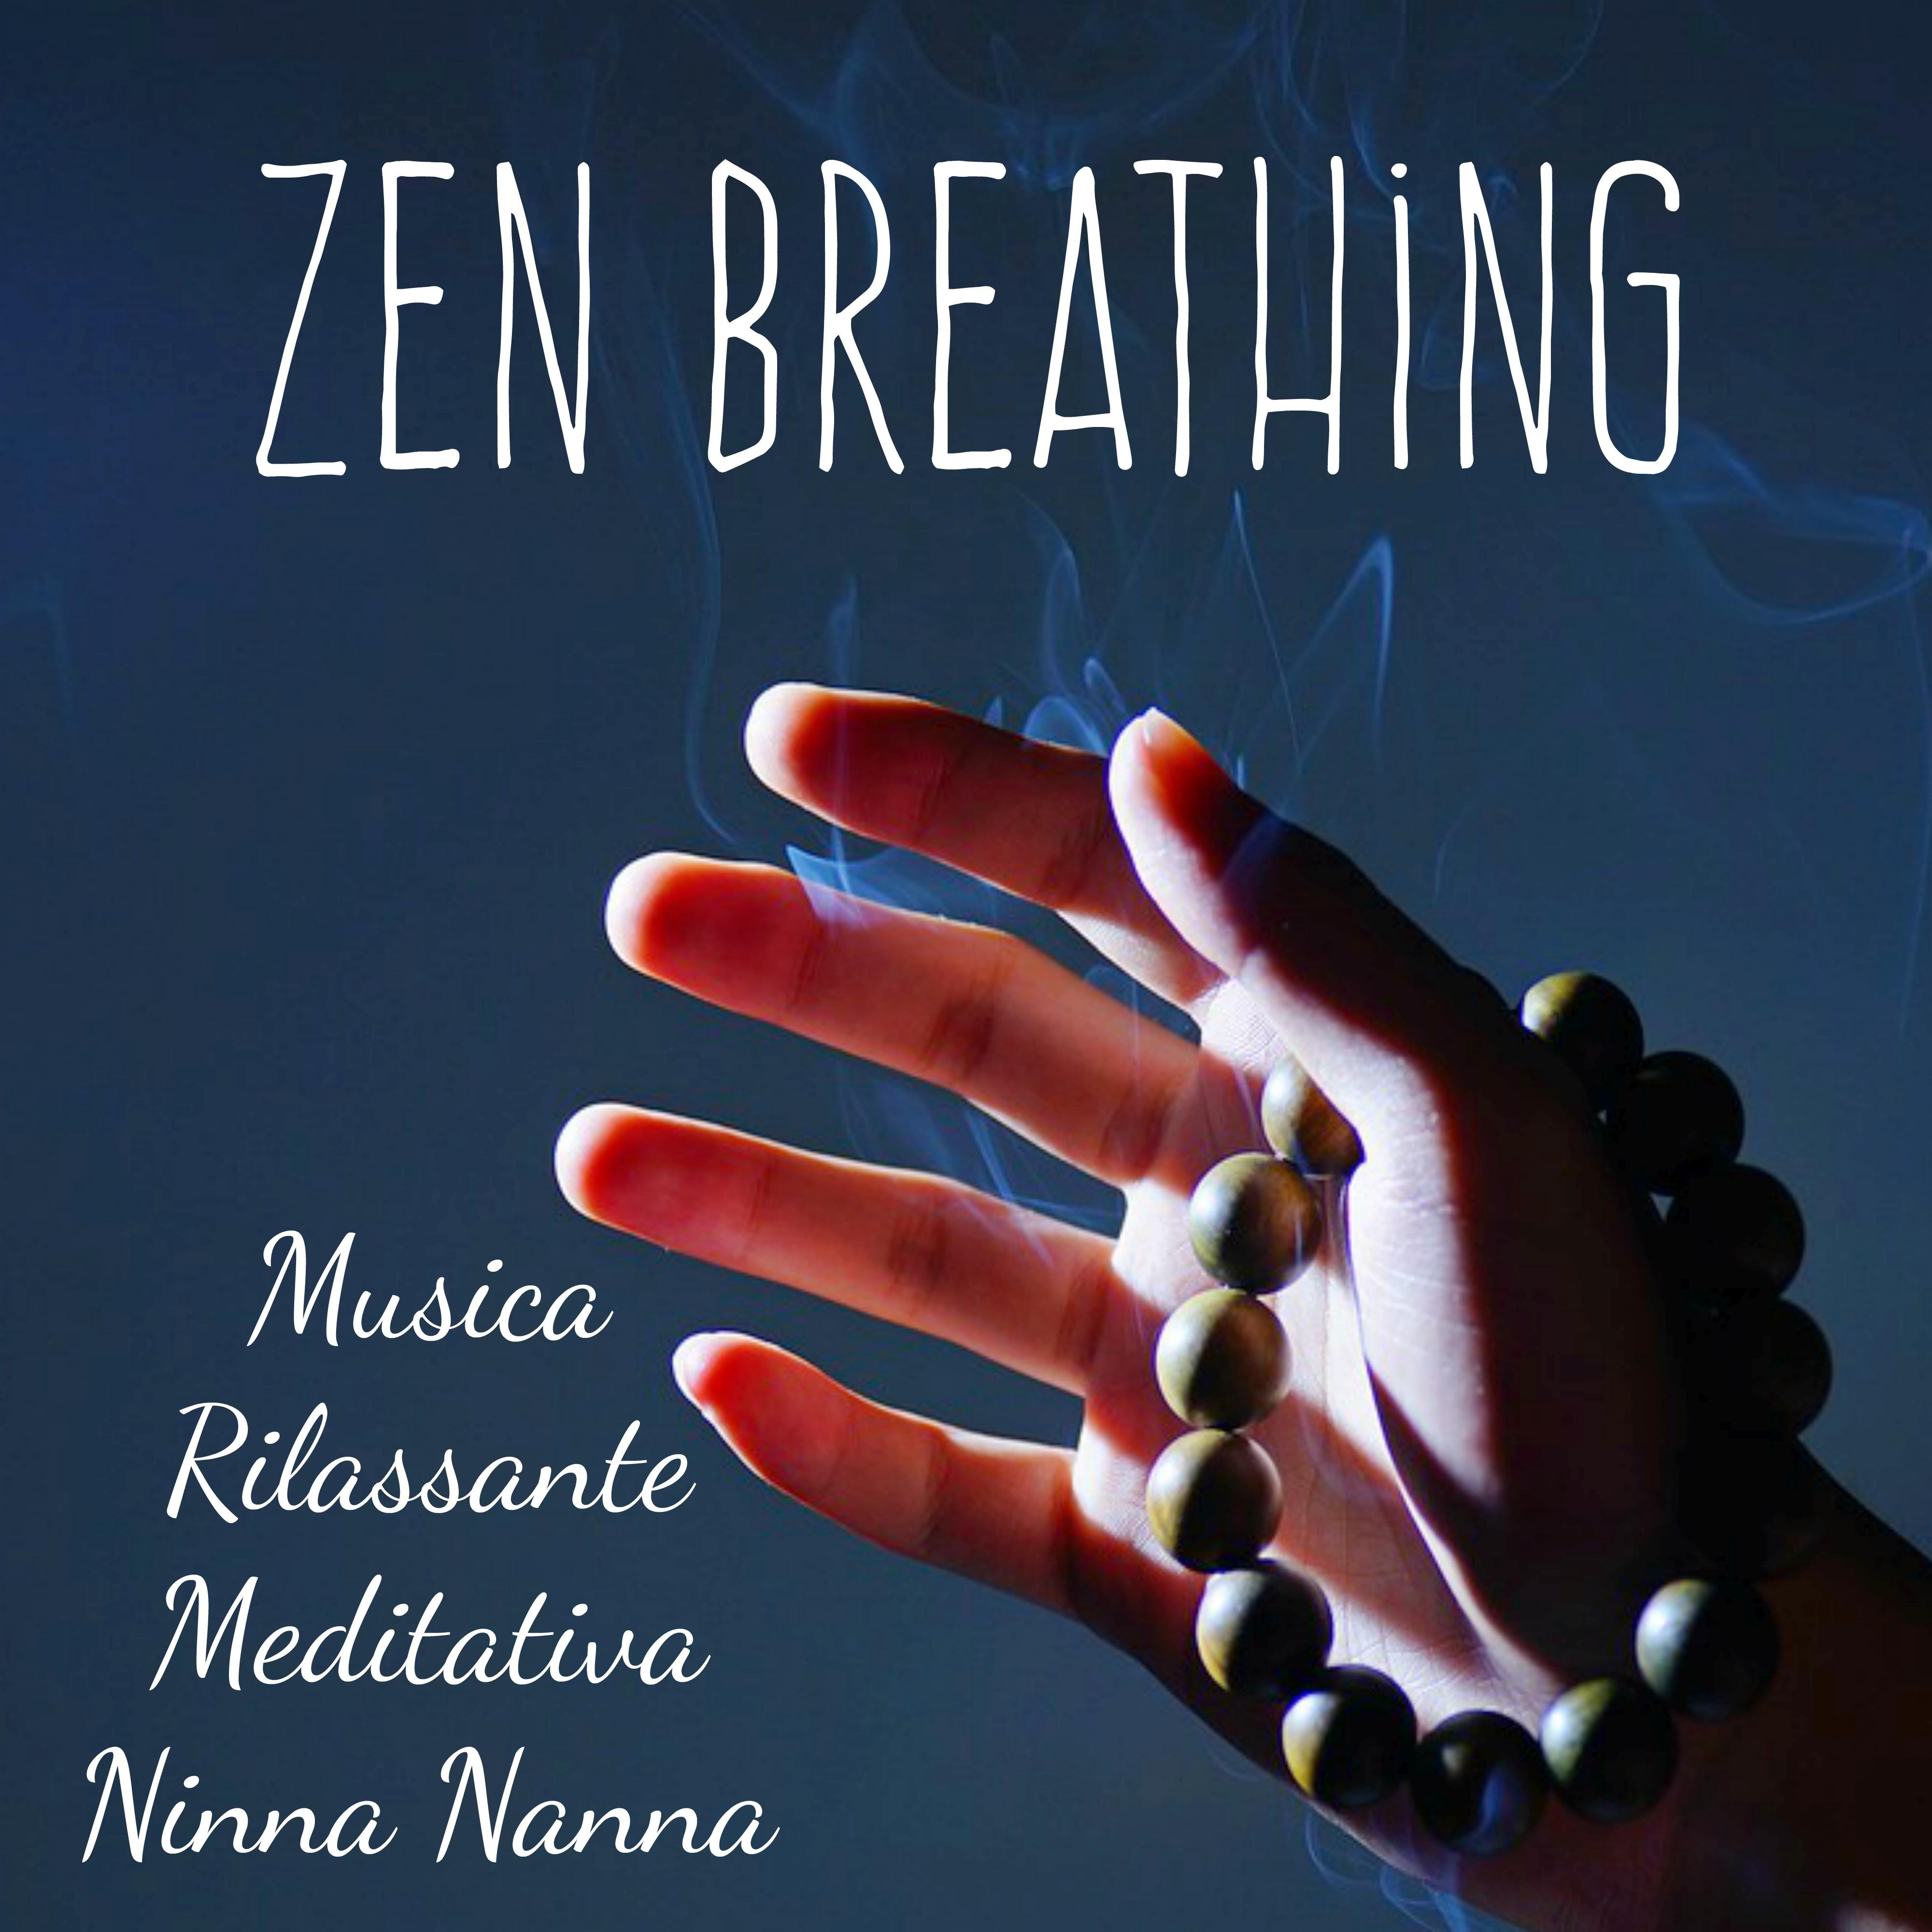 Zen Breathing - Musica Rilassante Meditativa Ninna Nanna per Mantenere la Calma Dormire Benessere Fisico e Mentale con Suoni Strumentali Spirituali della Natura